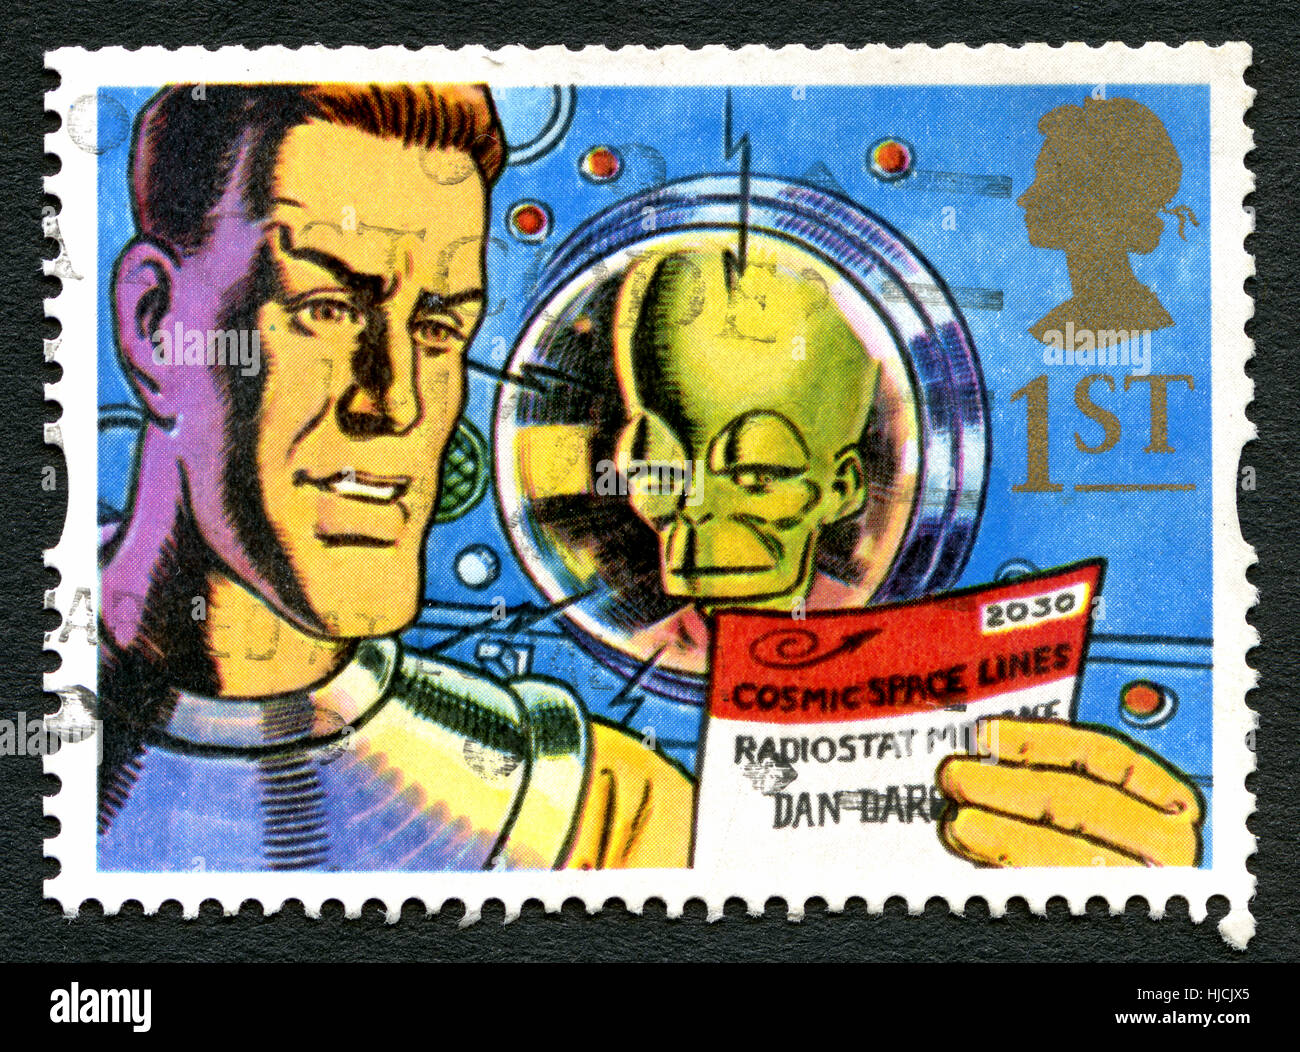 Gran Bretaña: circa 1994: Un sello utilizado en el Reino Unido, mostrando una ilustración del héroe de cómic, Dan Dare y su archienemiga la Mekon, circa Foto de stock